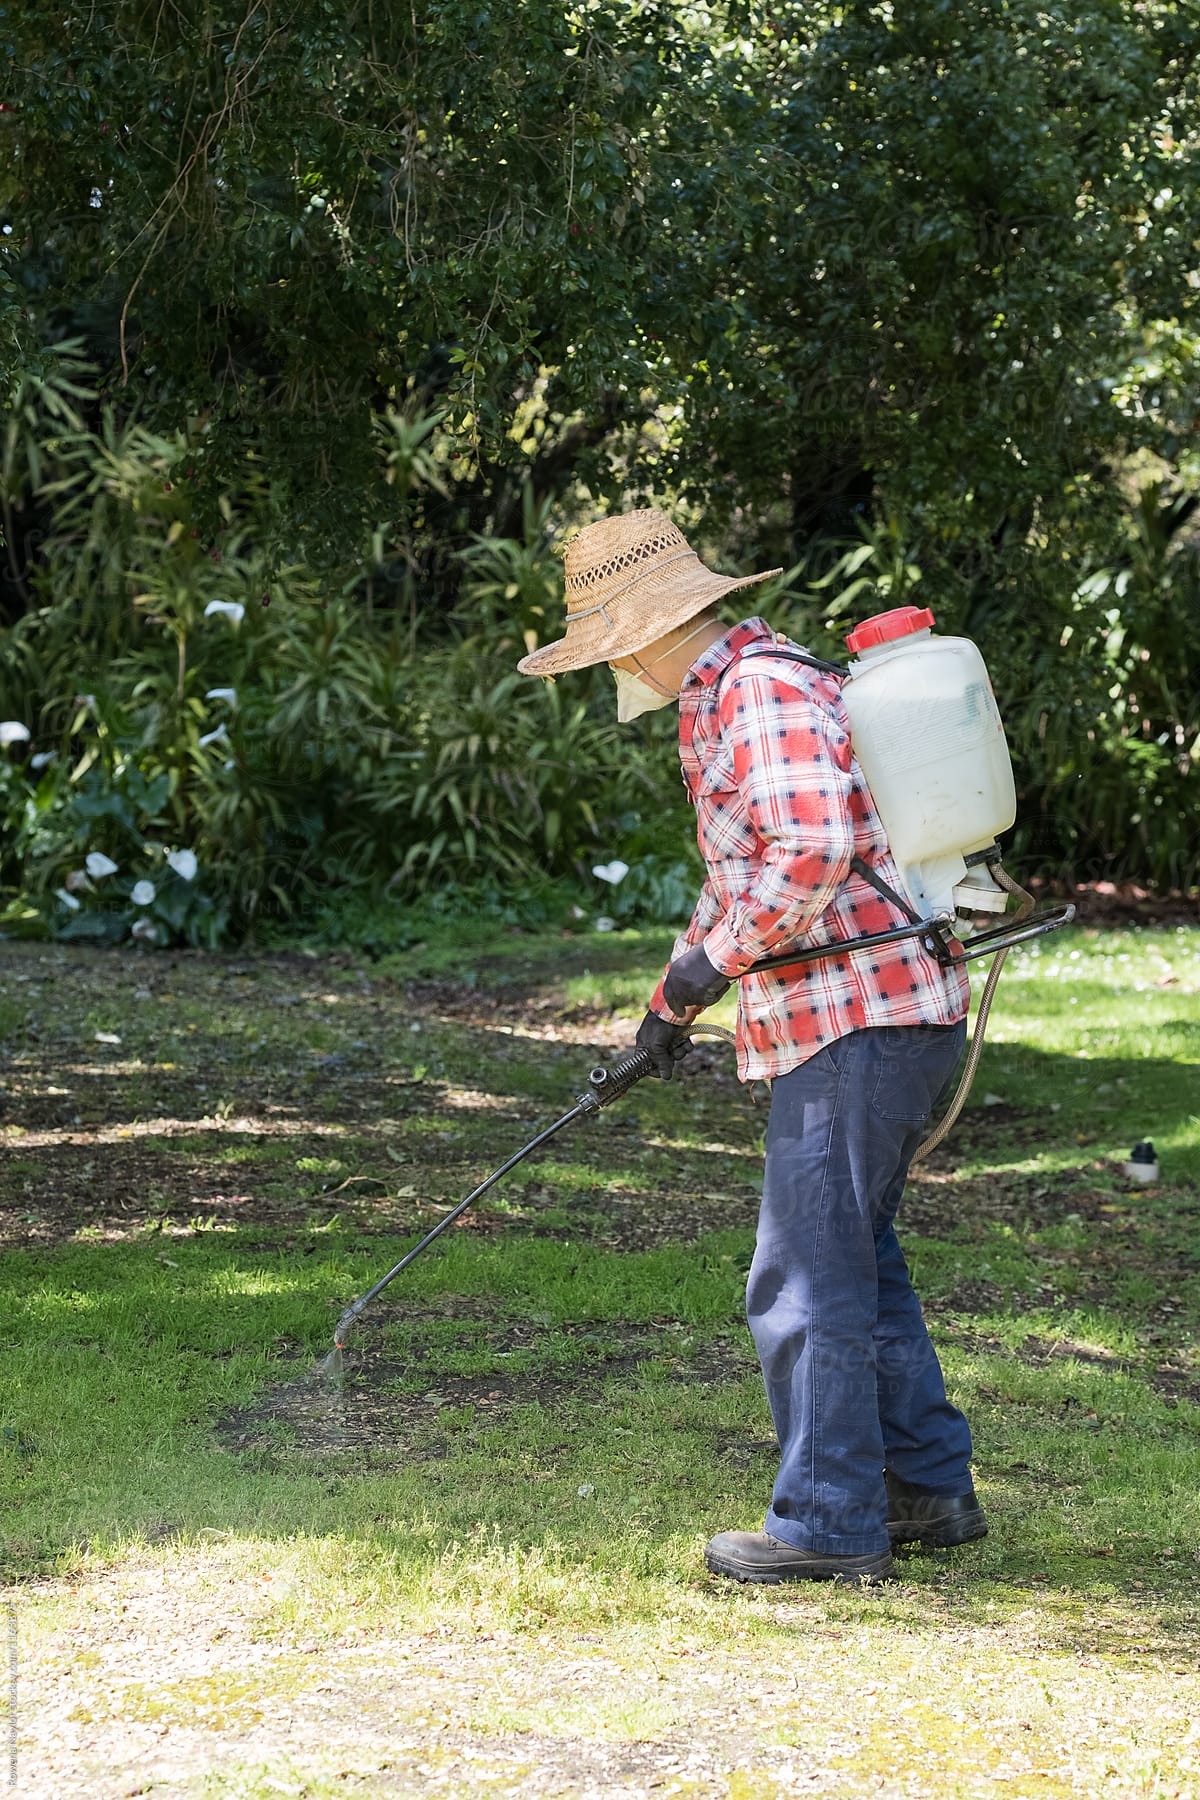 Gardener using pesticide on weeds in garden